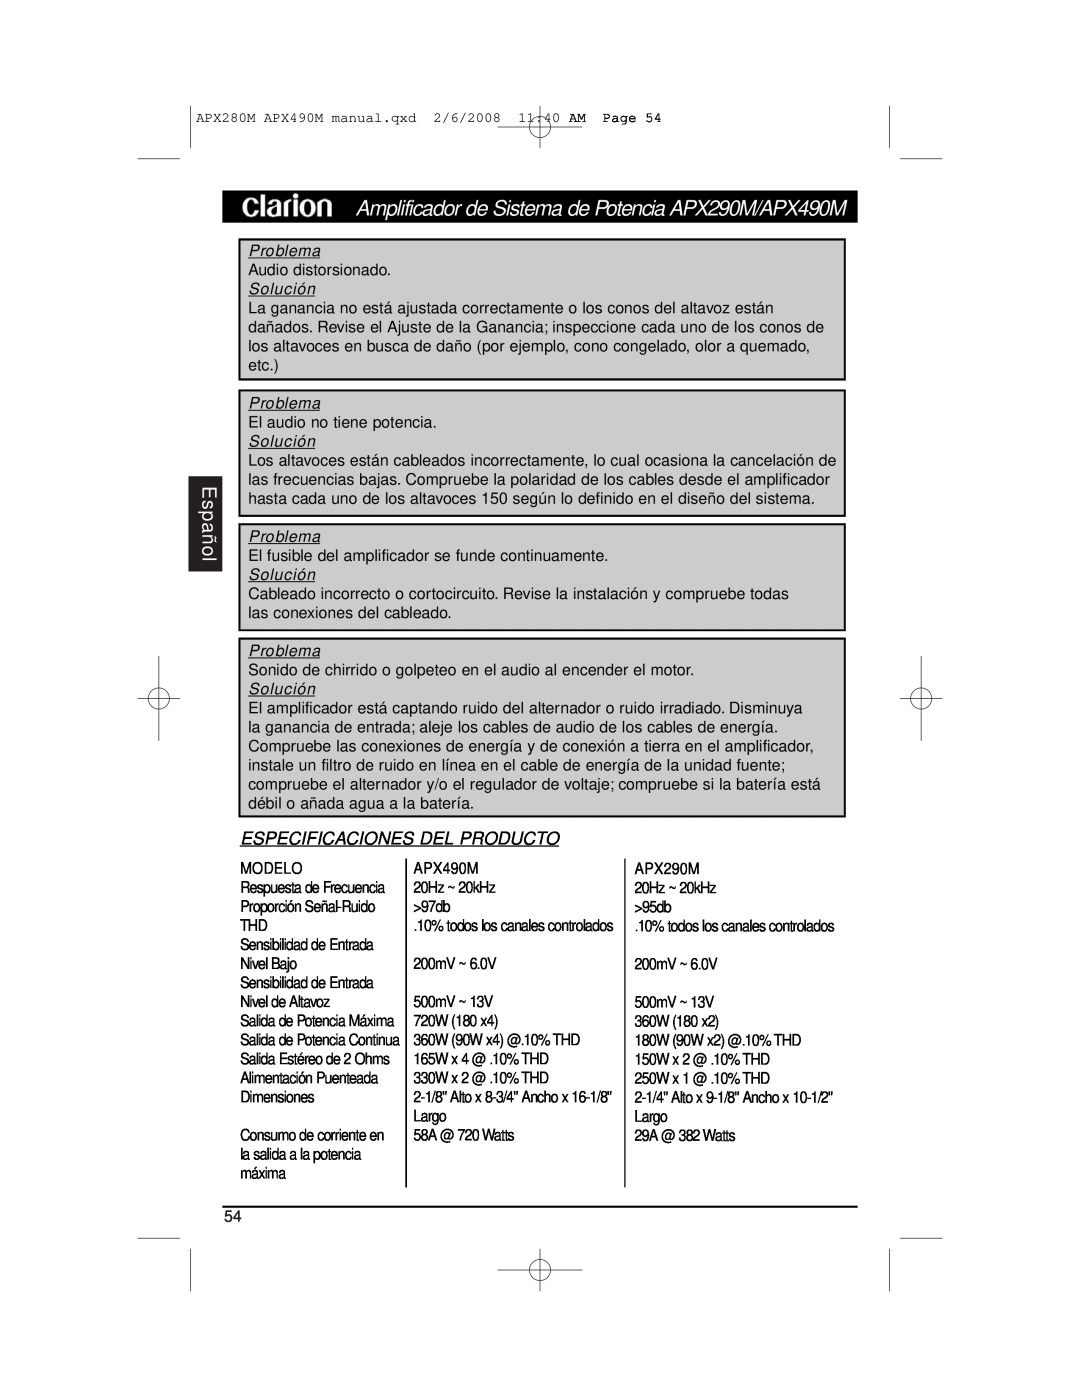 Clarion APX290M installation manual Especificaciones Del Producto, Pro blema, Español, Problema 